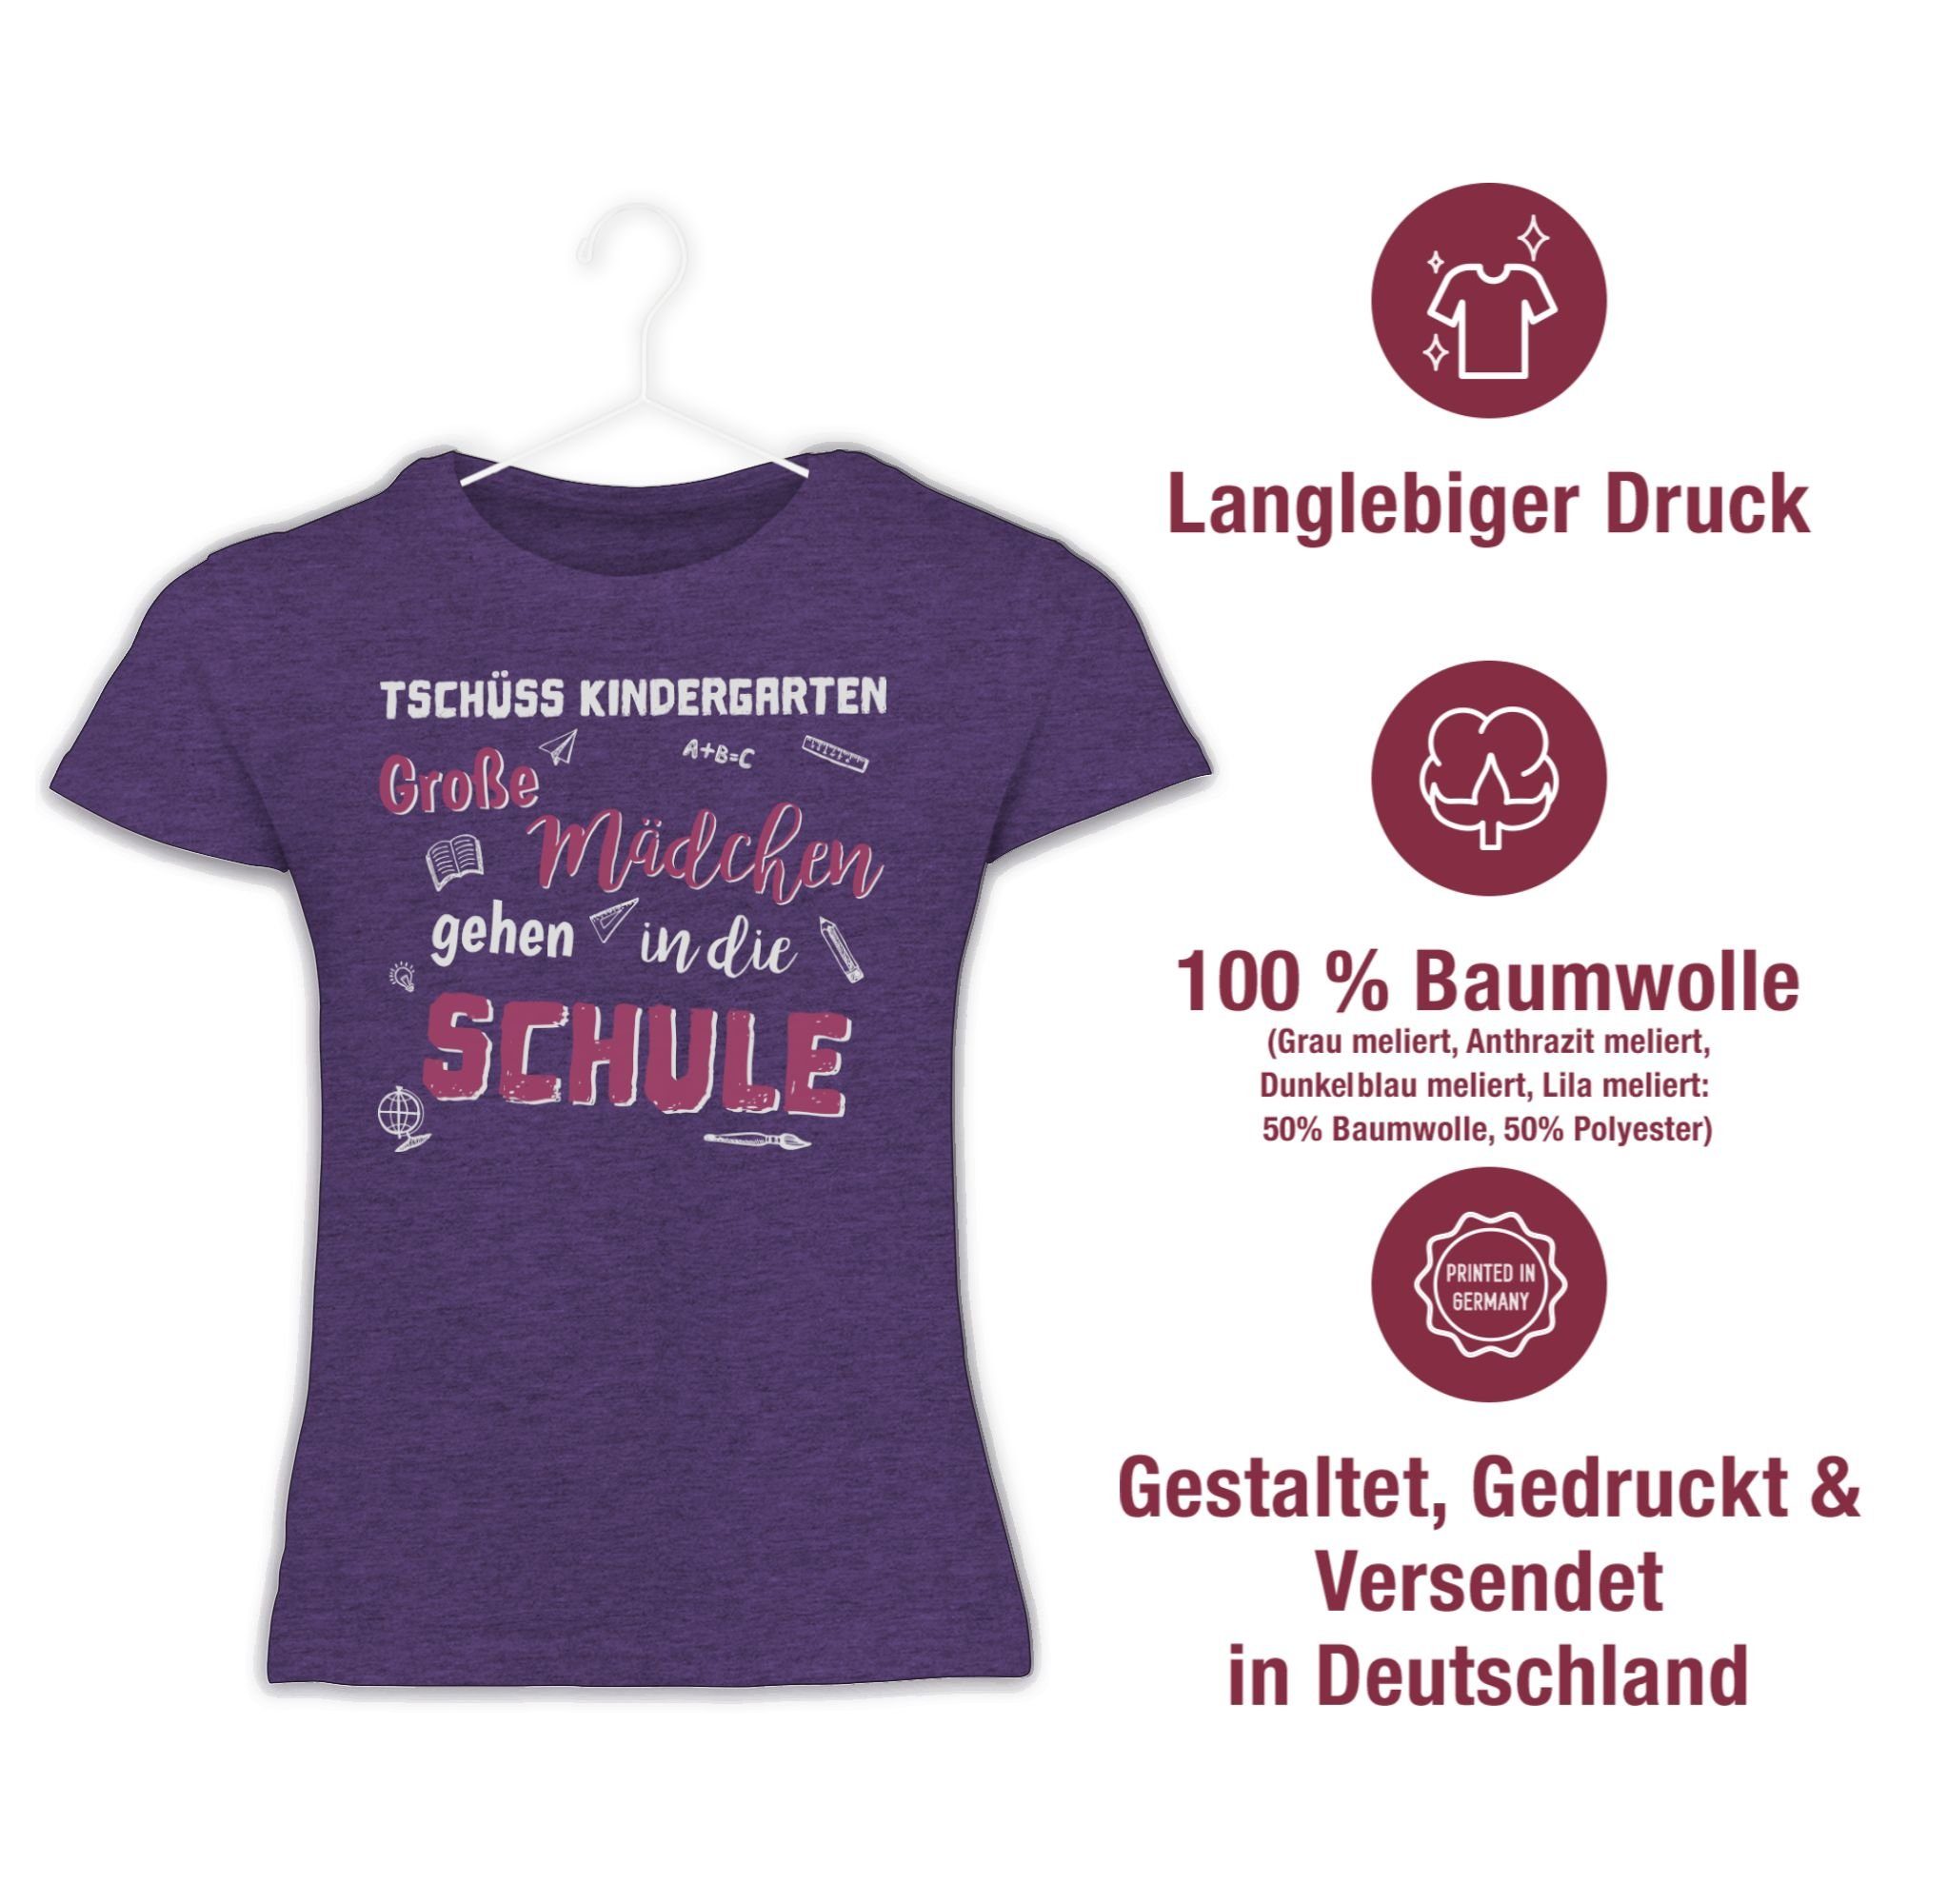 Kindergarten Große Einschulung Tschüss T-Shirt Meliert Mädchen Mädchen Lila Shirtracer 1